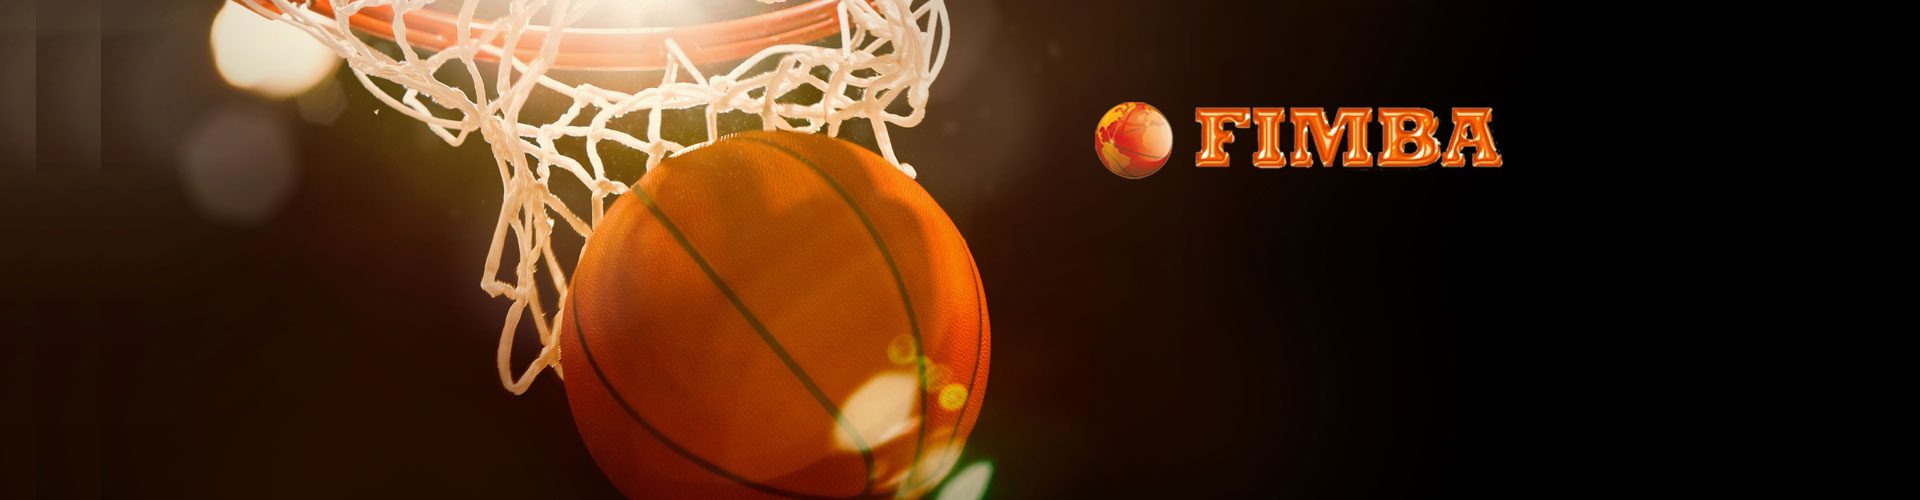 1° giorno Mondiali di Basket Montecatini Terme – tutte le foto